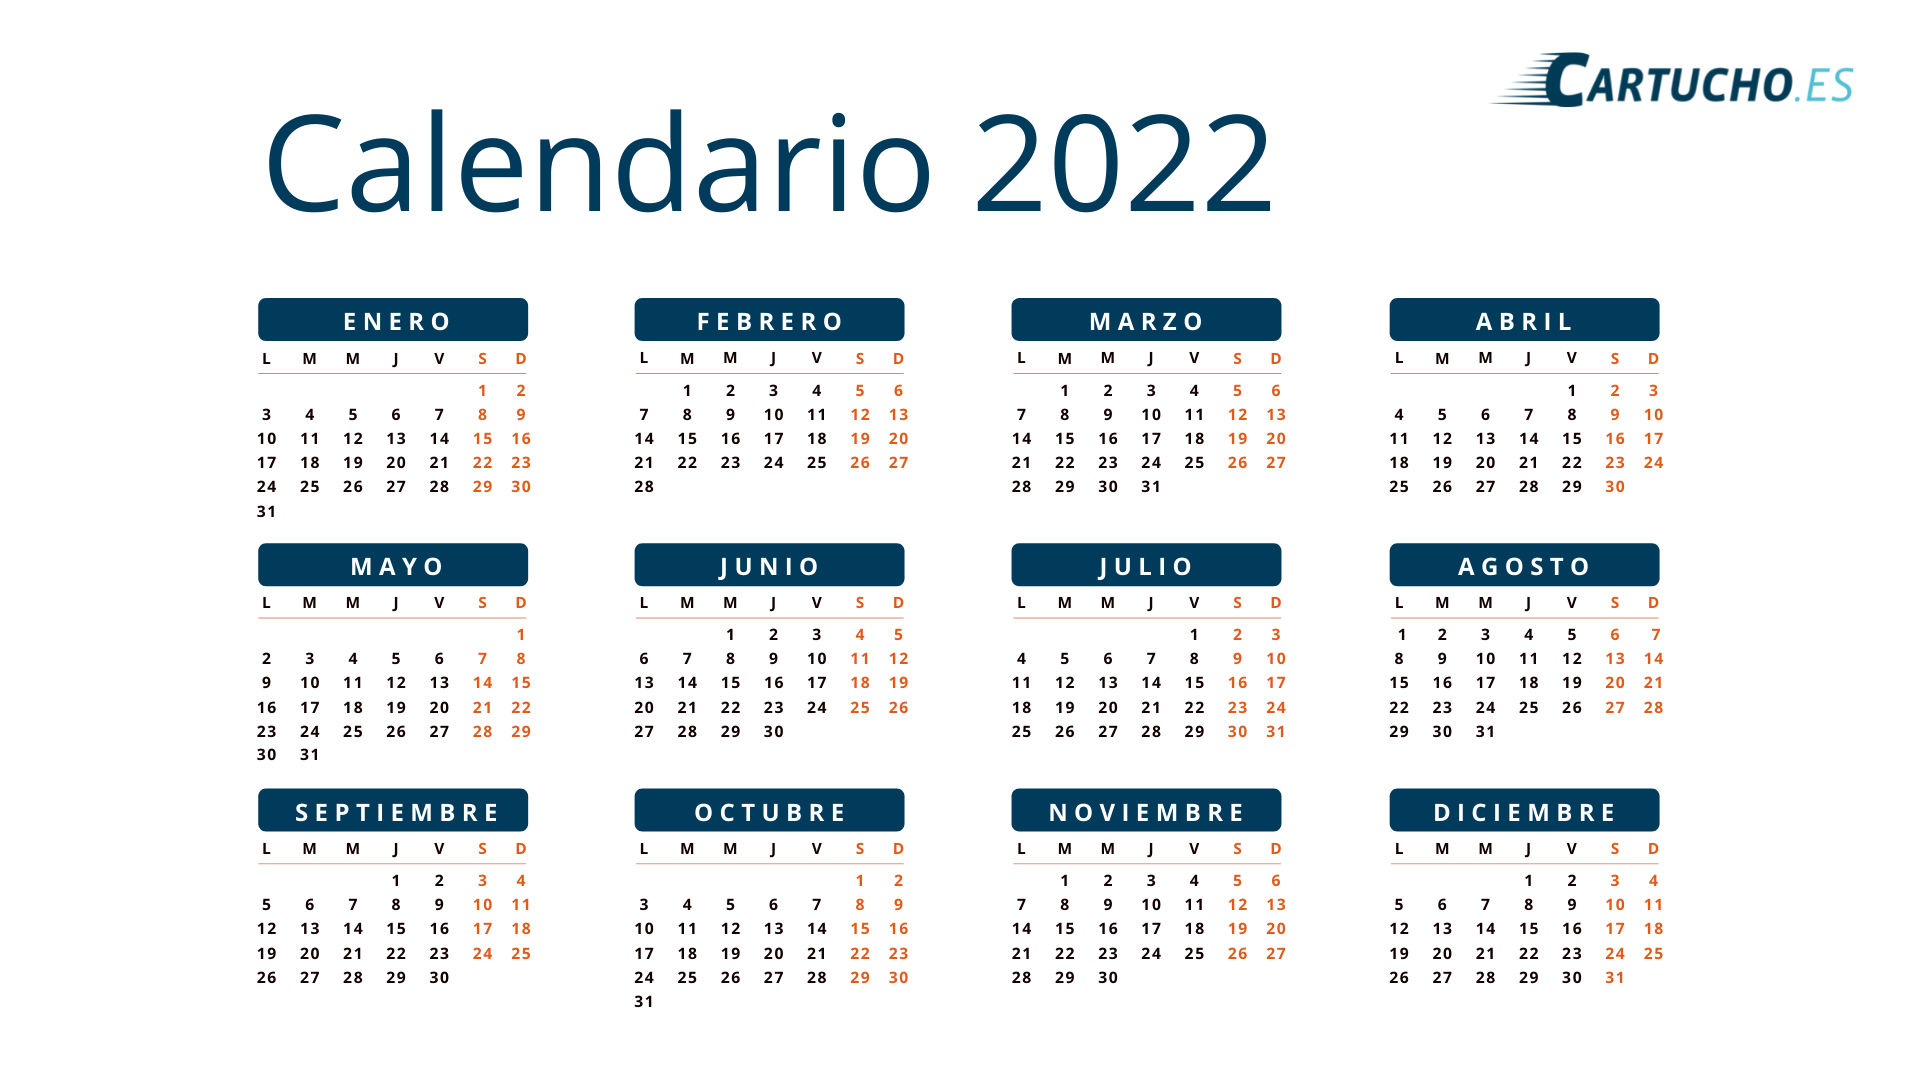 Calendario 2022 imprimir